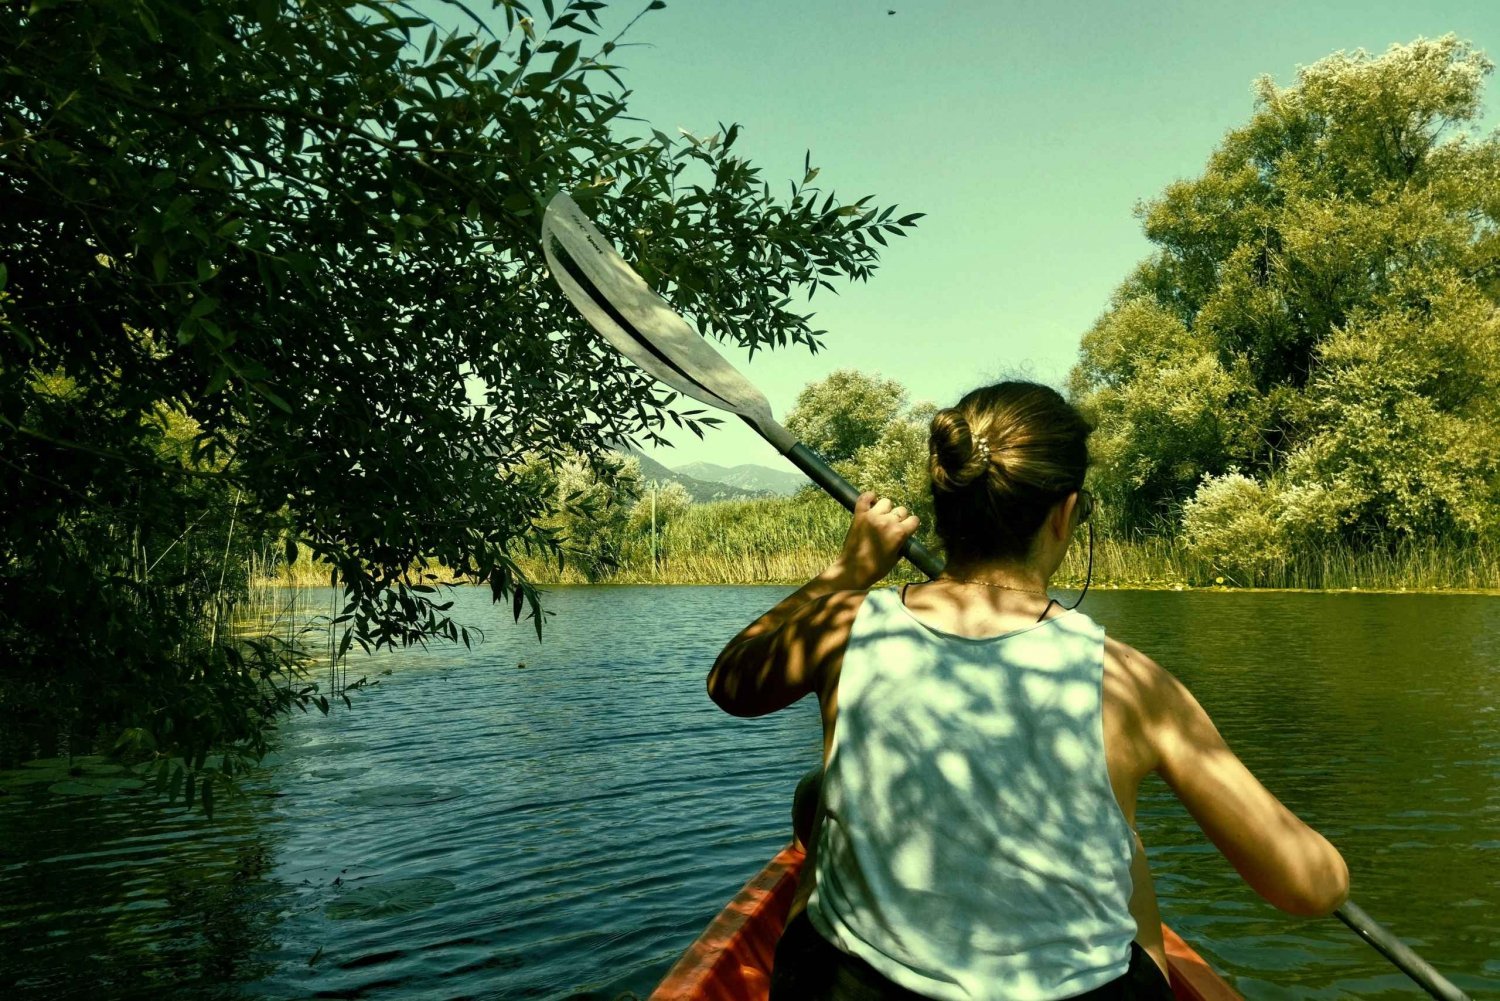 Kajakäventyr: Paddla dig fram genom Skadarsjön